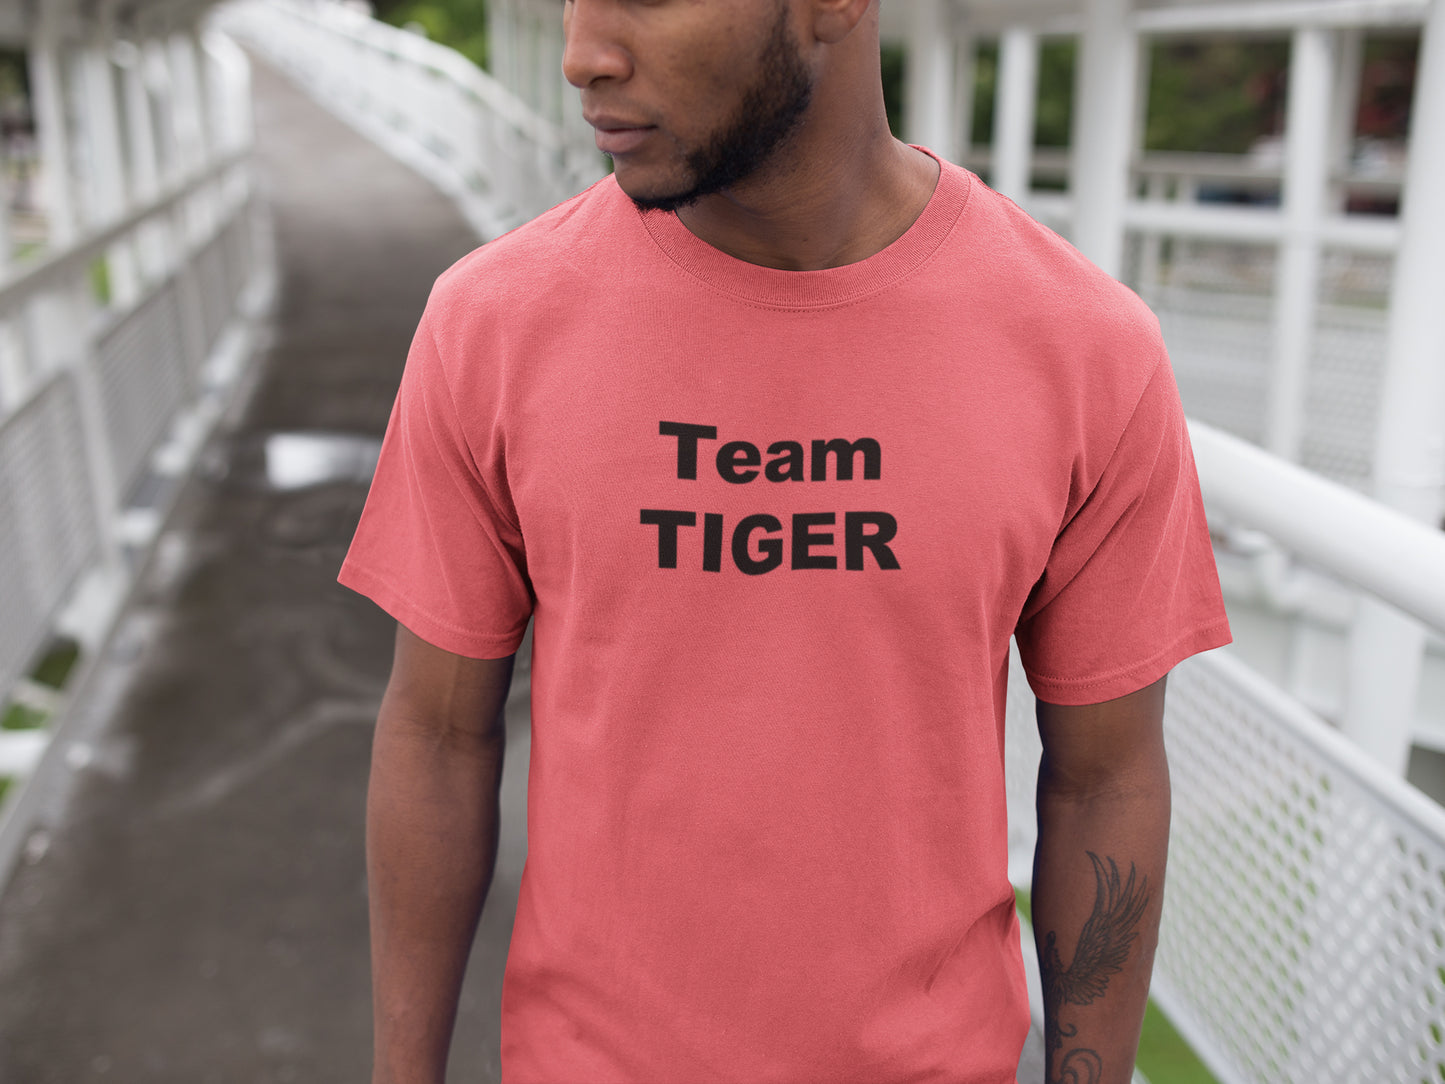 Team Tiger Summer T-shirt for Men